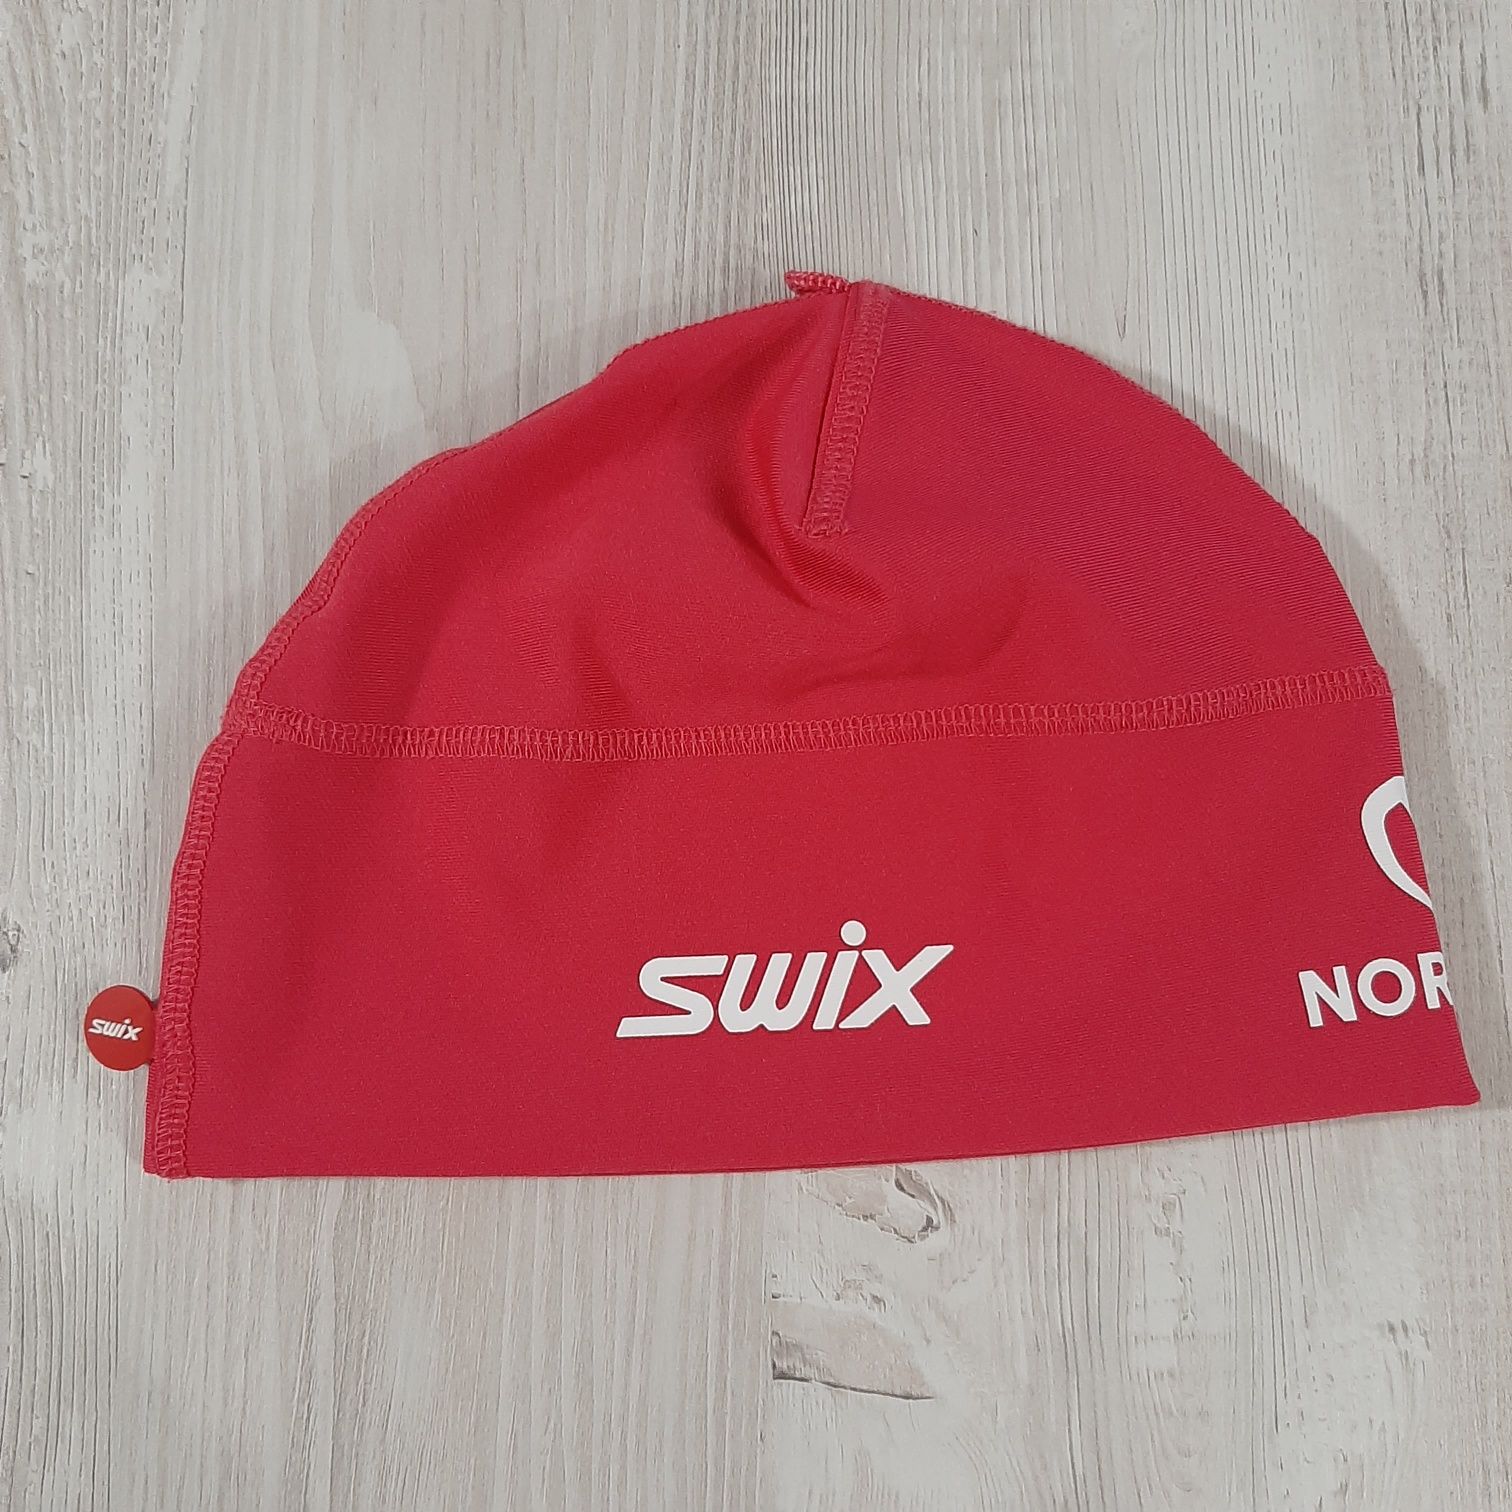 Czapka SWIX treningowa sportowa na narty biegowe, jogging. Różowa.